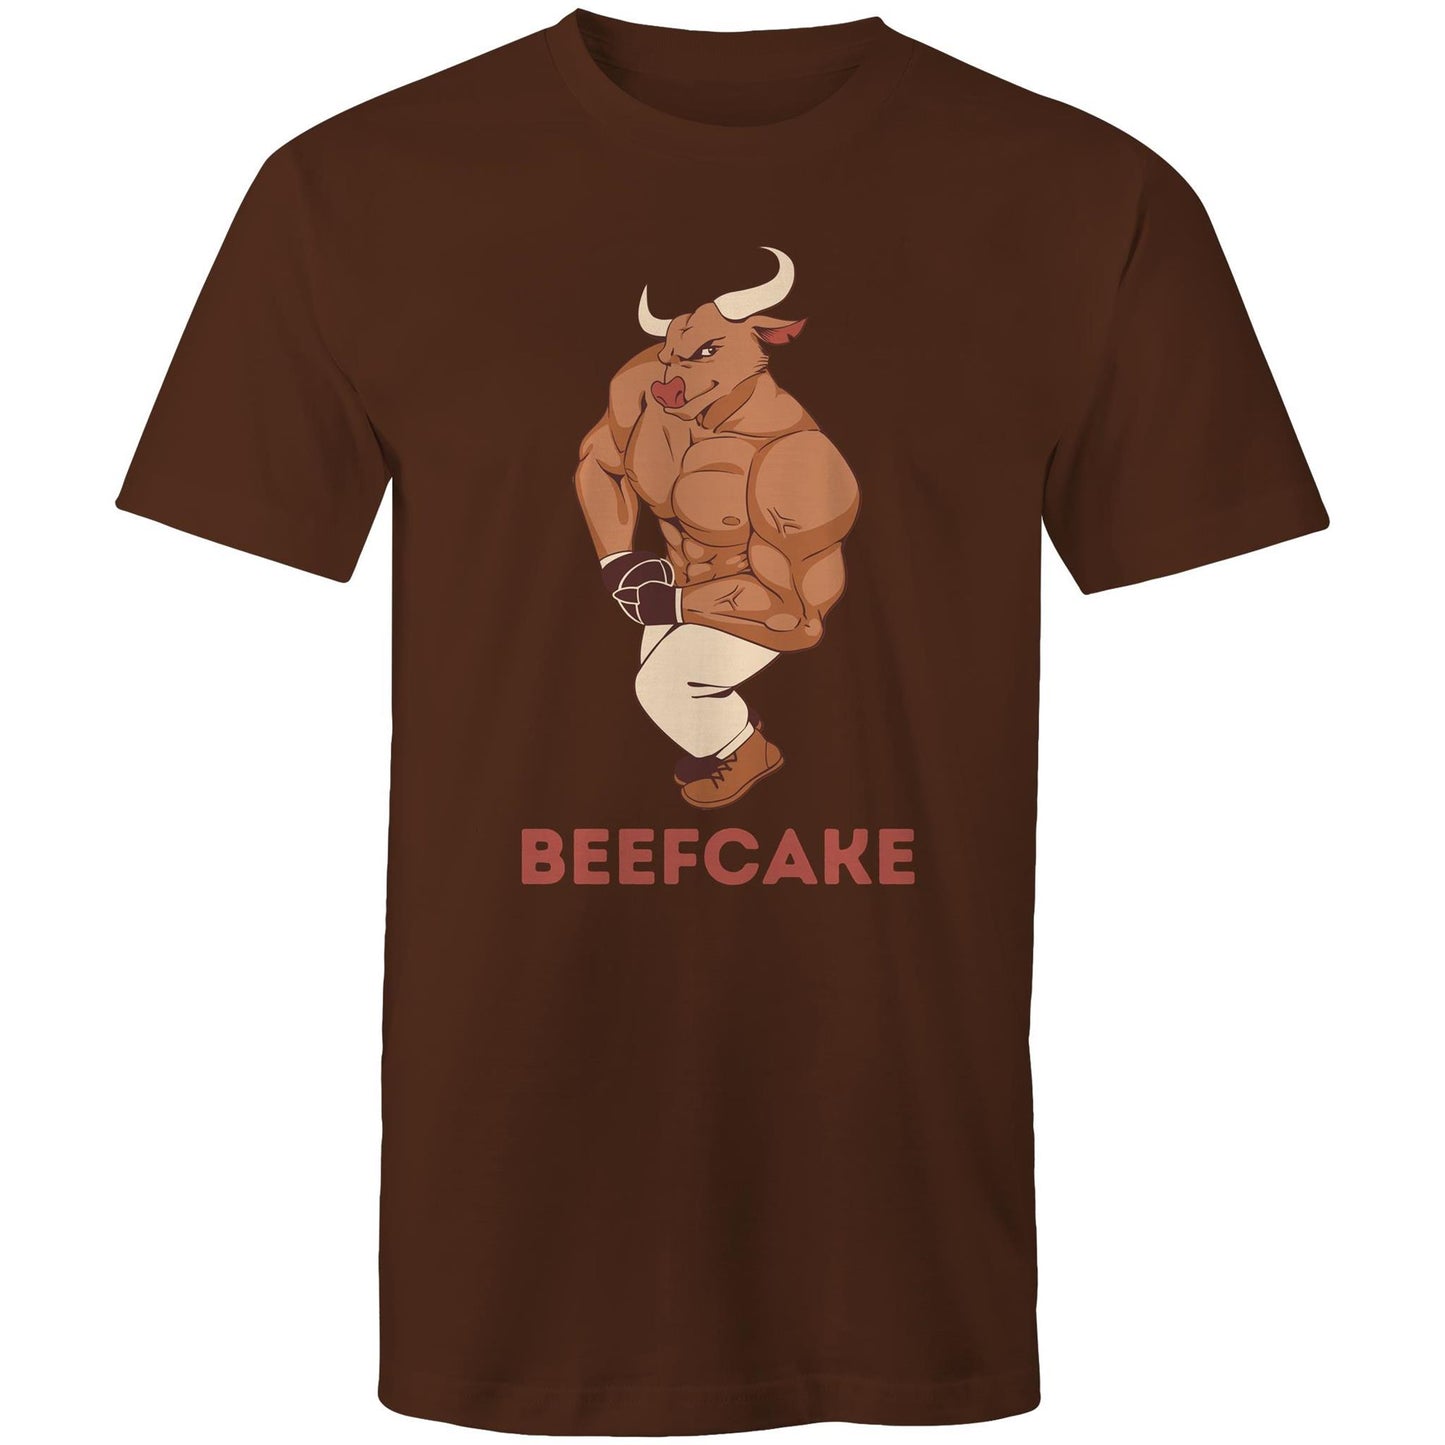 Beefcake, Bull, Gym - Mens T-Shirt Dark Chocolate Fitness T-shirt Fitness